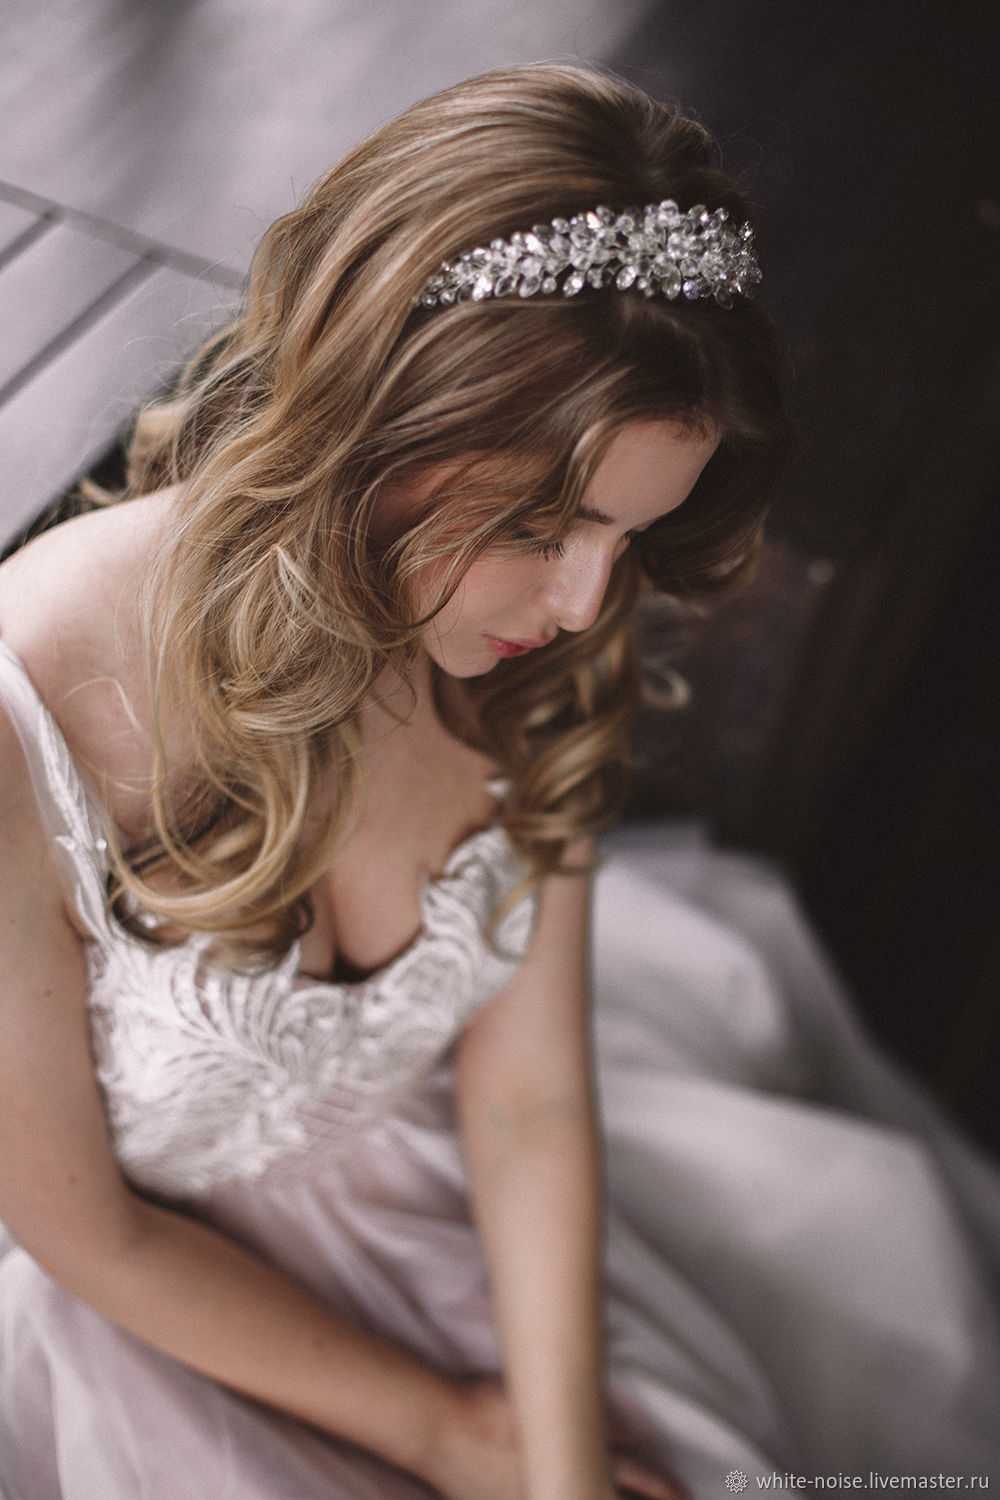 Свадебные украшения на голову невесты: виды аксессуаров, фото и советы по выбору